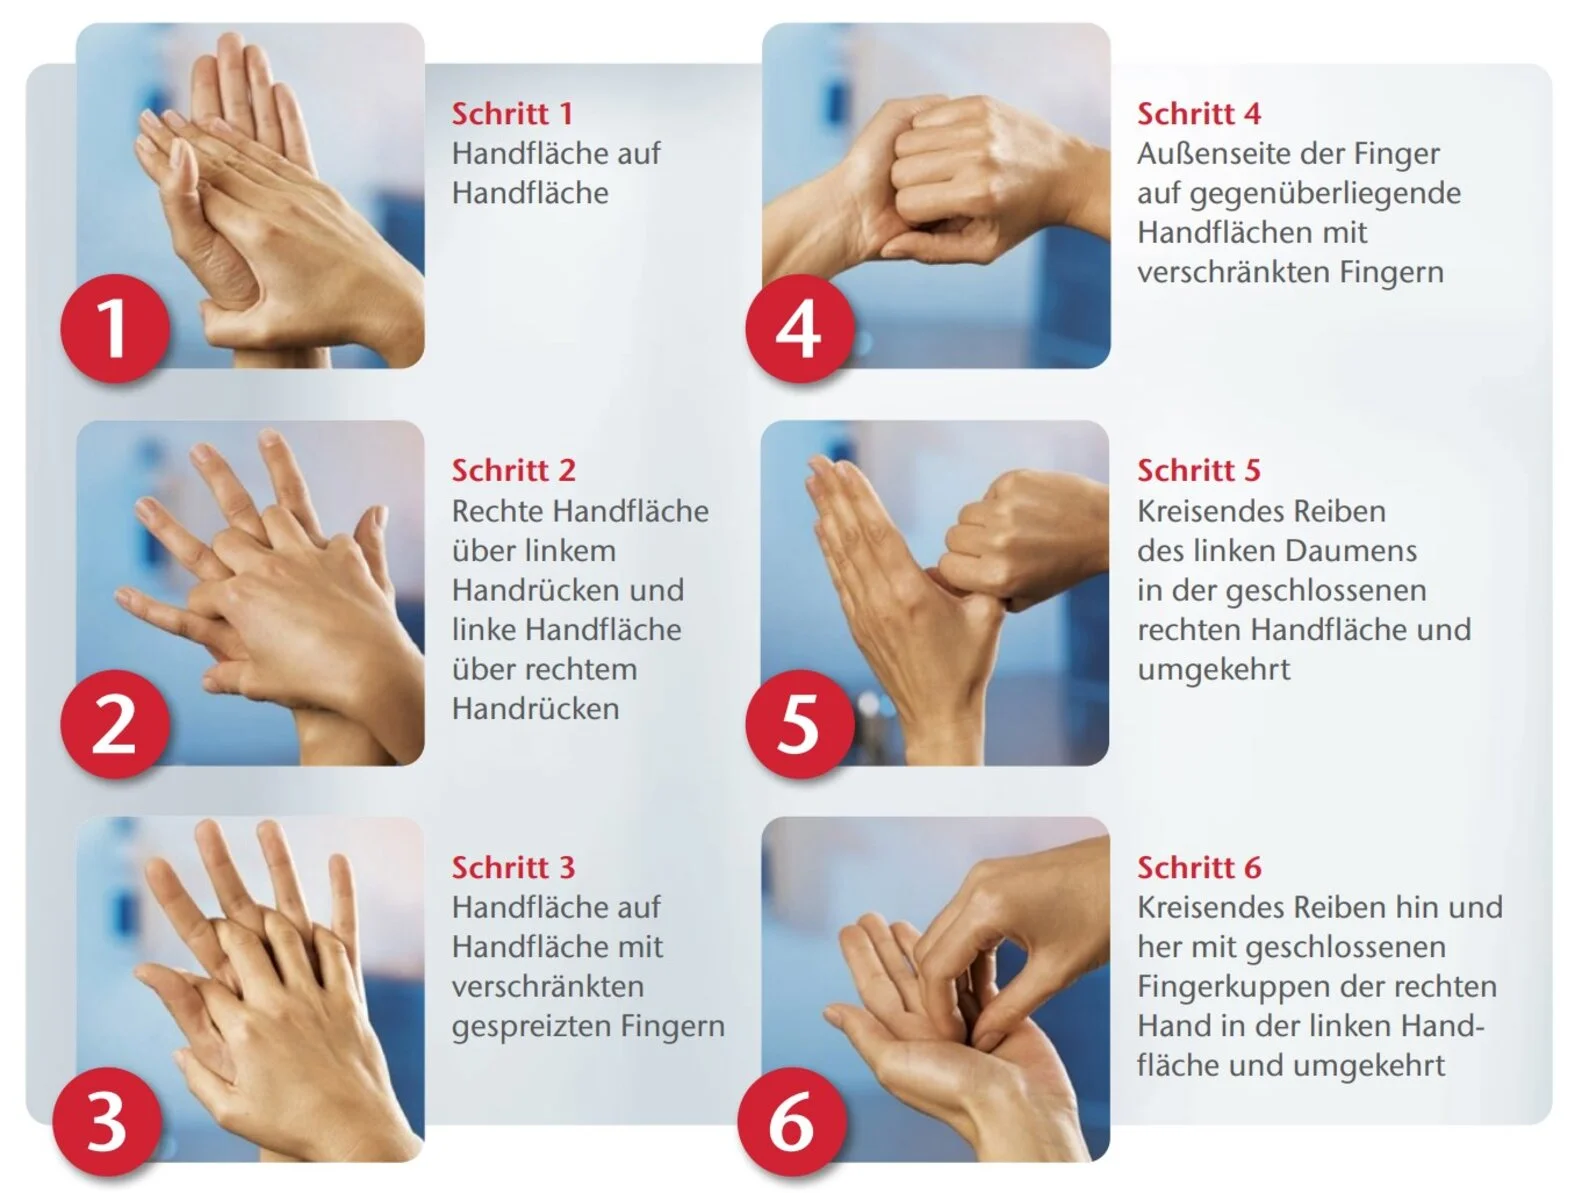 Hygienische Händedesinfektion, 6 Schritte